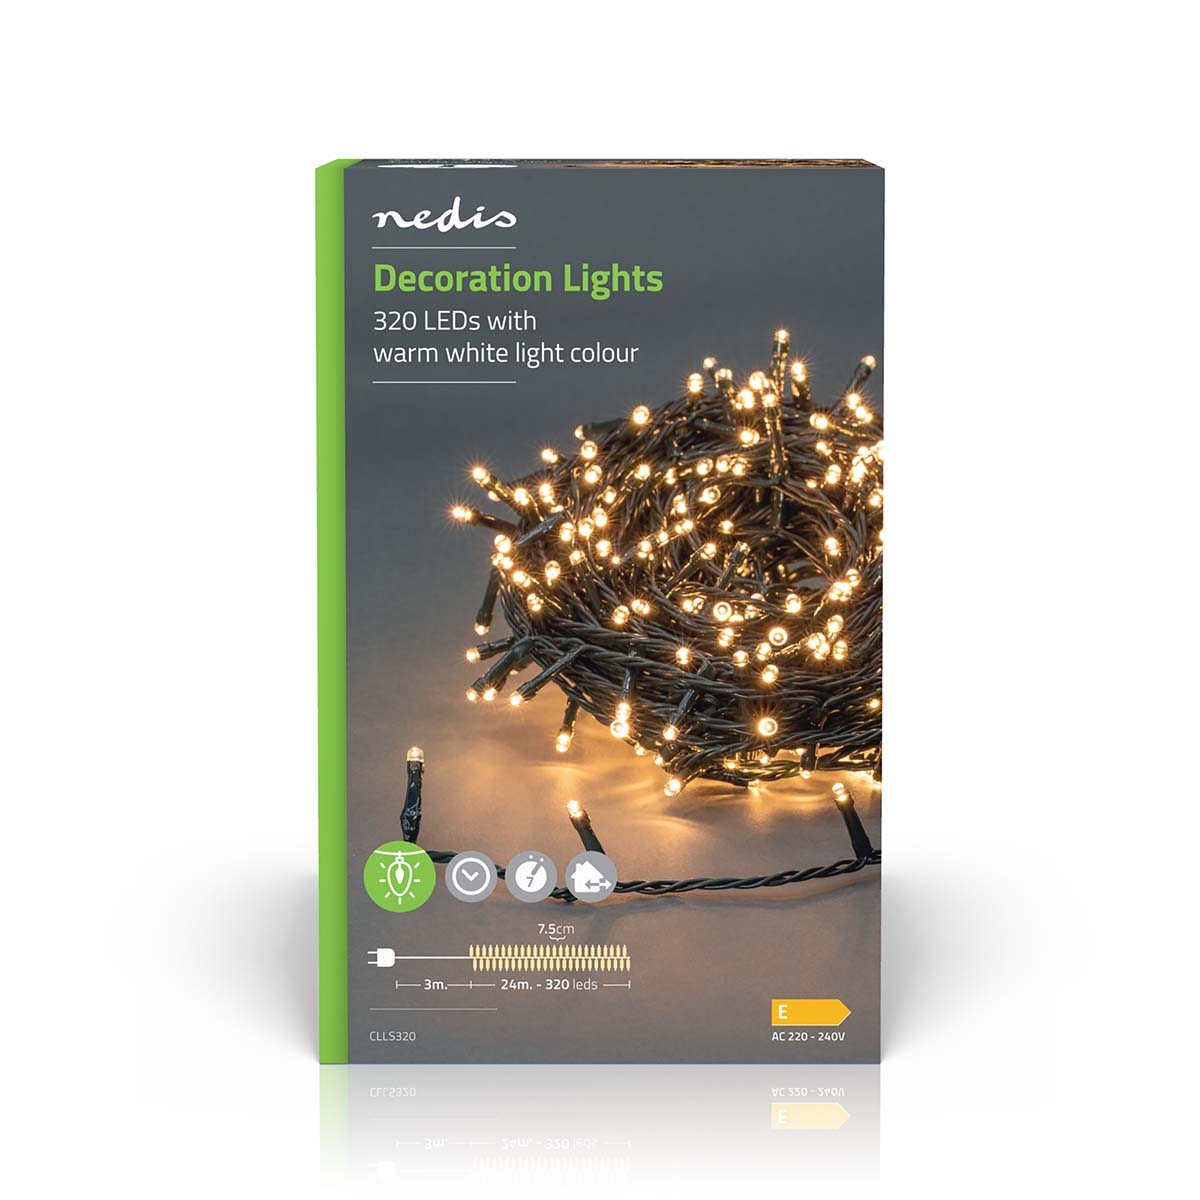 LED-Lichterkette warmweiss 320 LEDs 24m jetzt kaufen - Aktionskönig